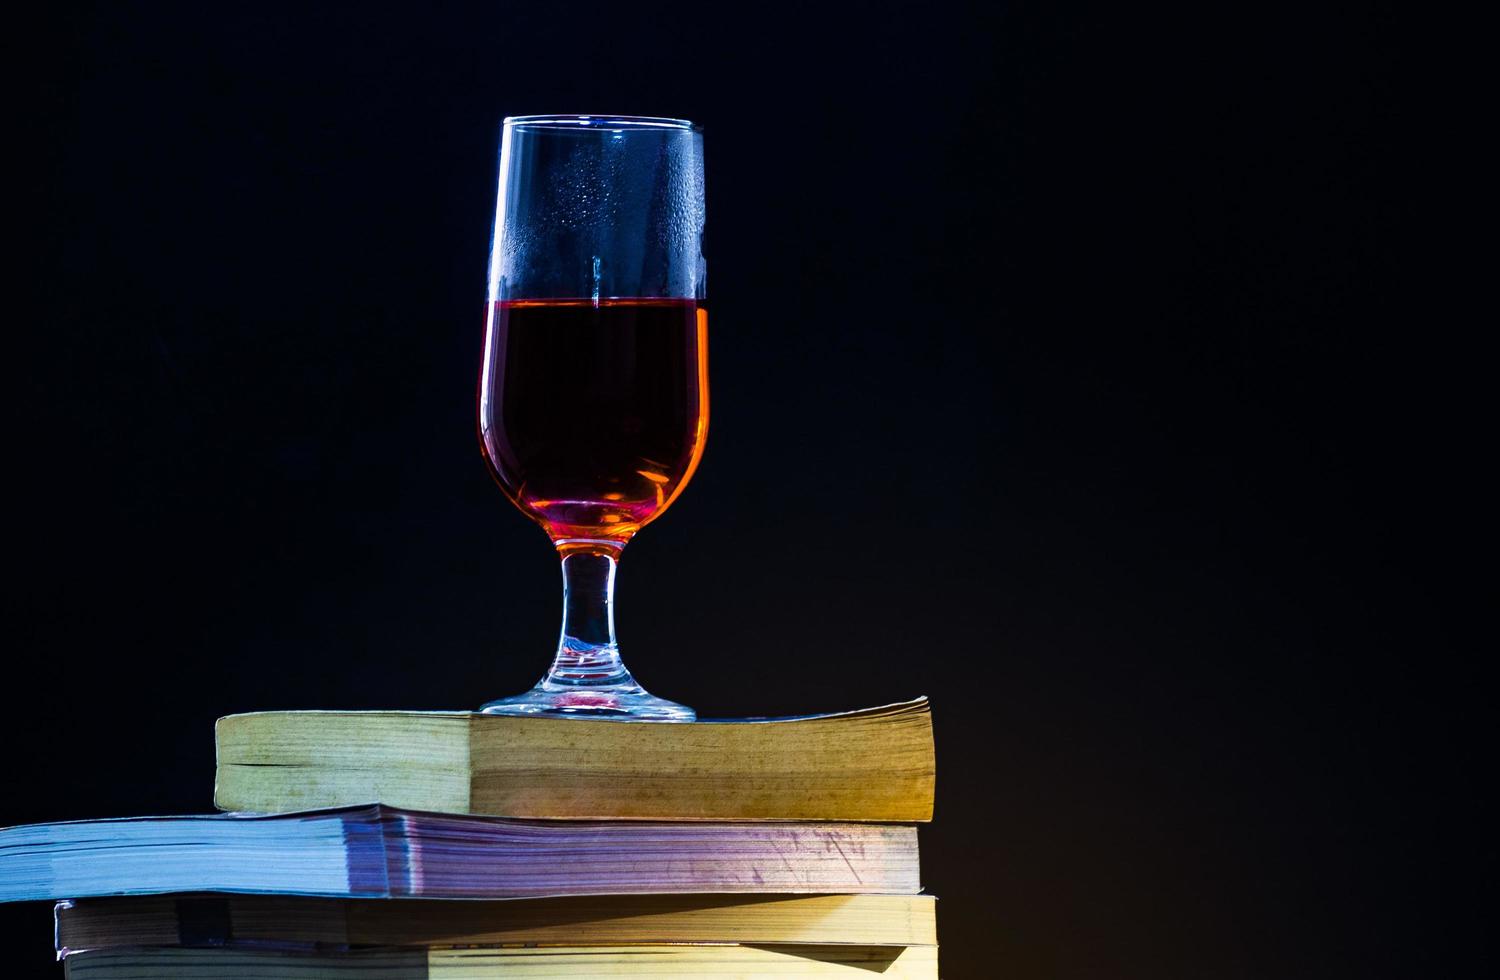 les vieux livres se chevauchent sur un fond noir et avec une lumière tamisée un verre de vin rouge sur le dessus. photo